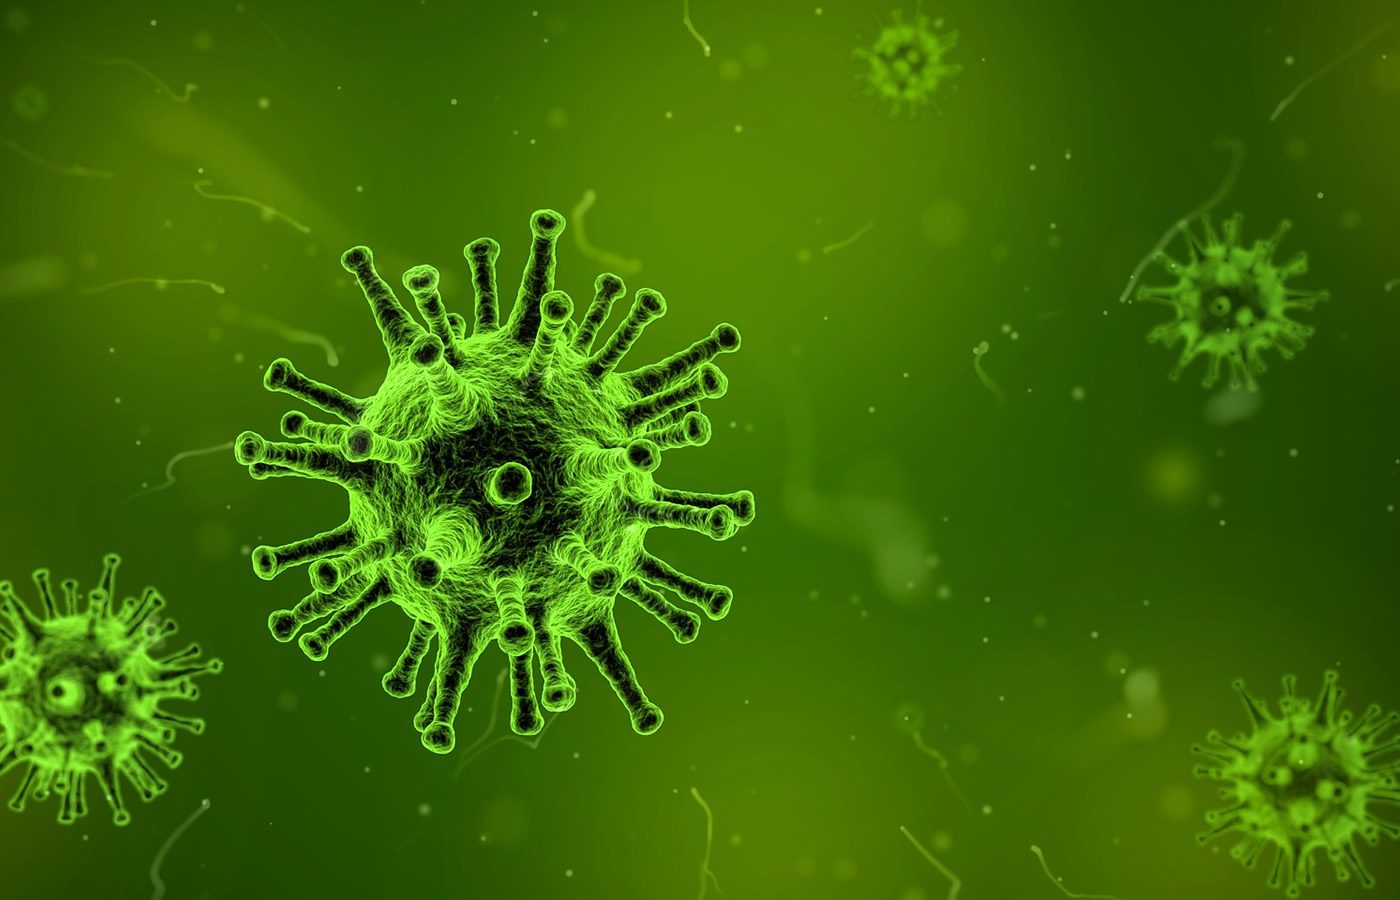 6 Dangerous Viruses That Take Leaders Down